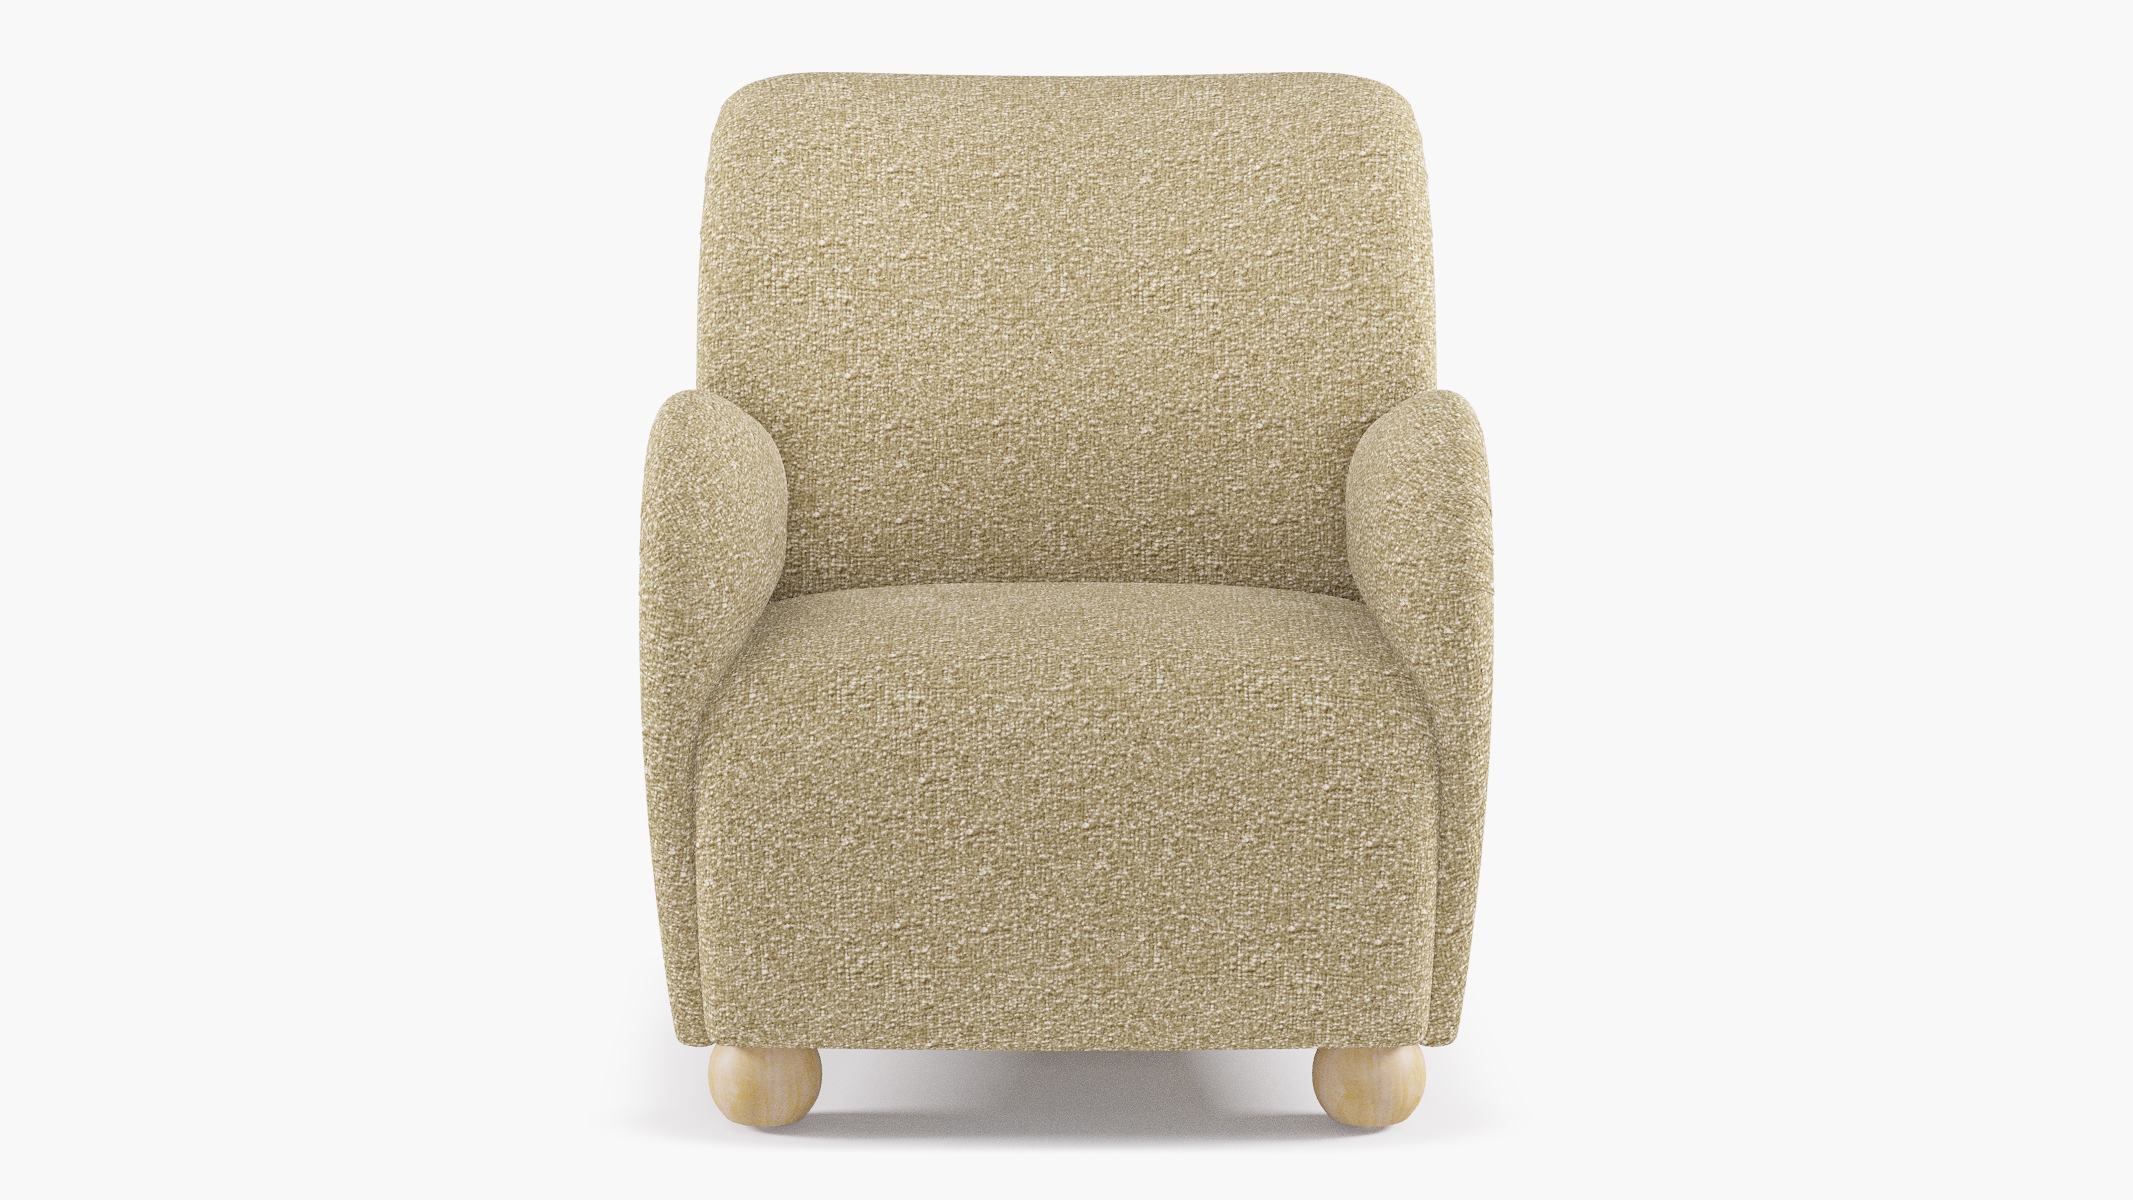 Bun Foot Accent Chair, Buff Bouclé, Natural - Image 1